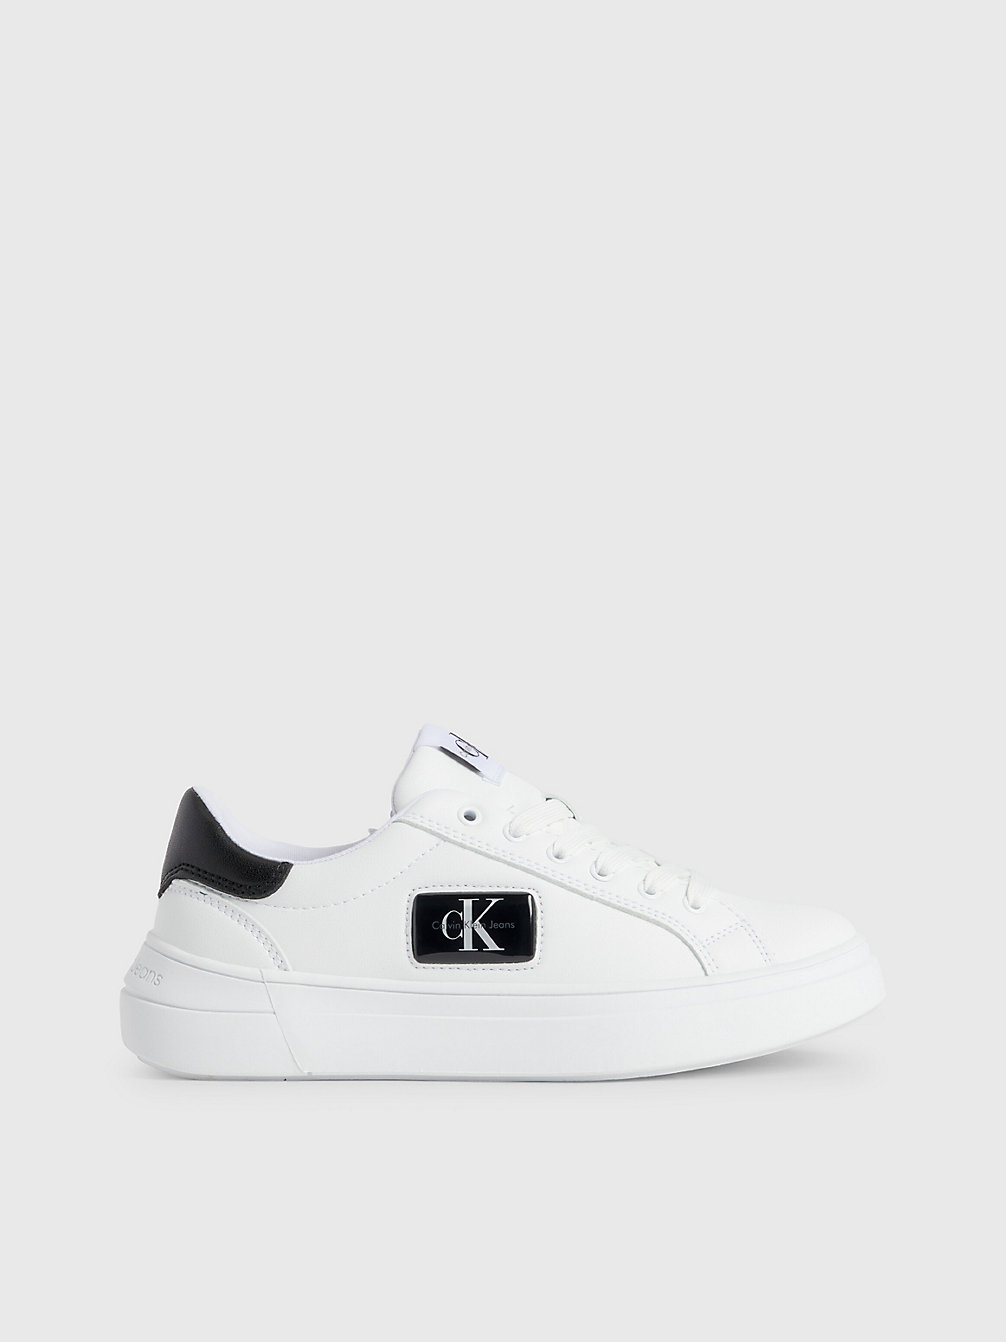 WHITE/BLACK > Recycelte Sneakers Für Kinder > undefined kids unisex - Calvin Klein